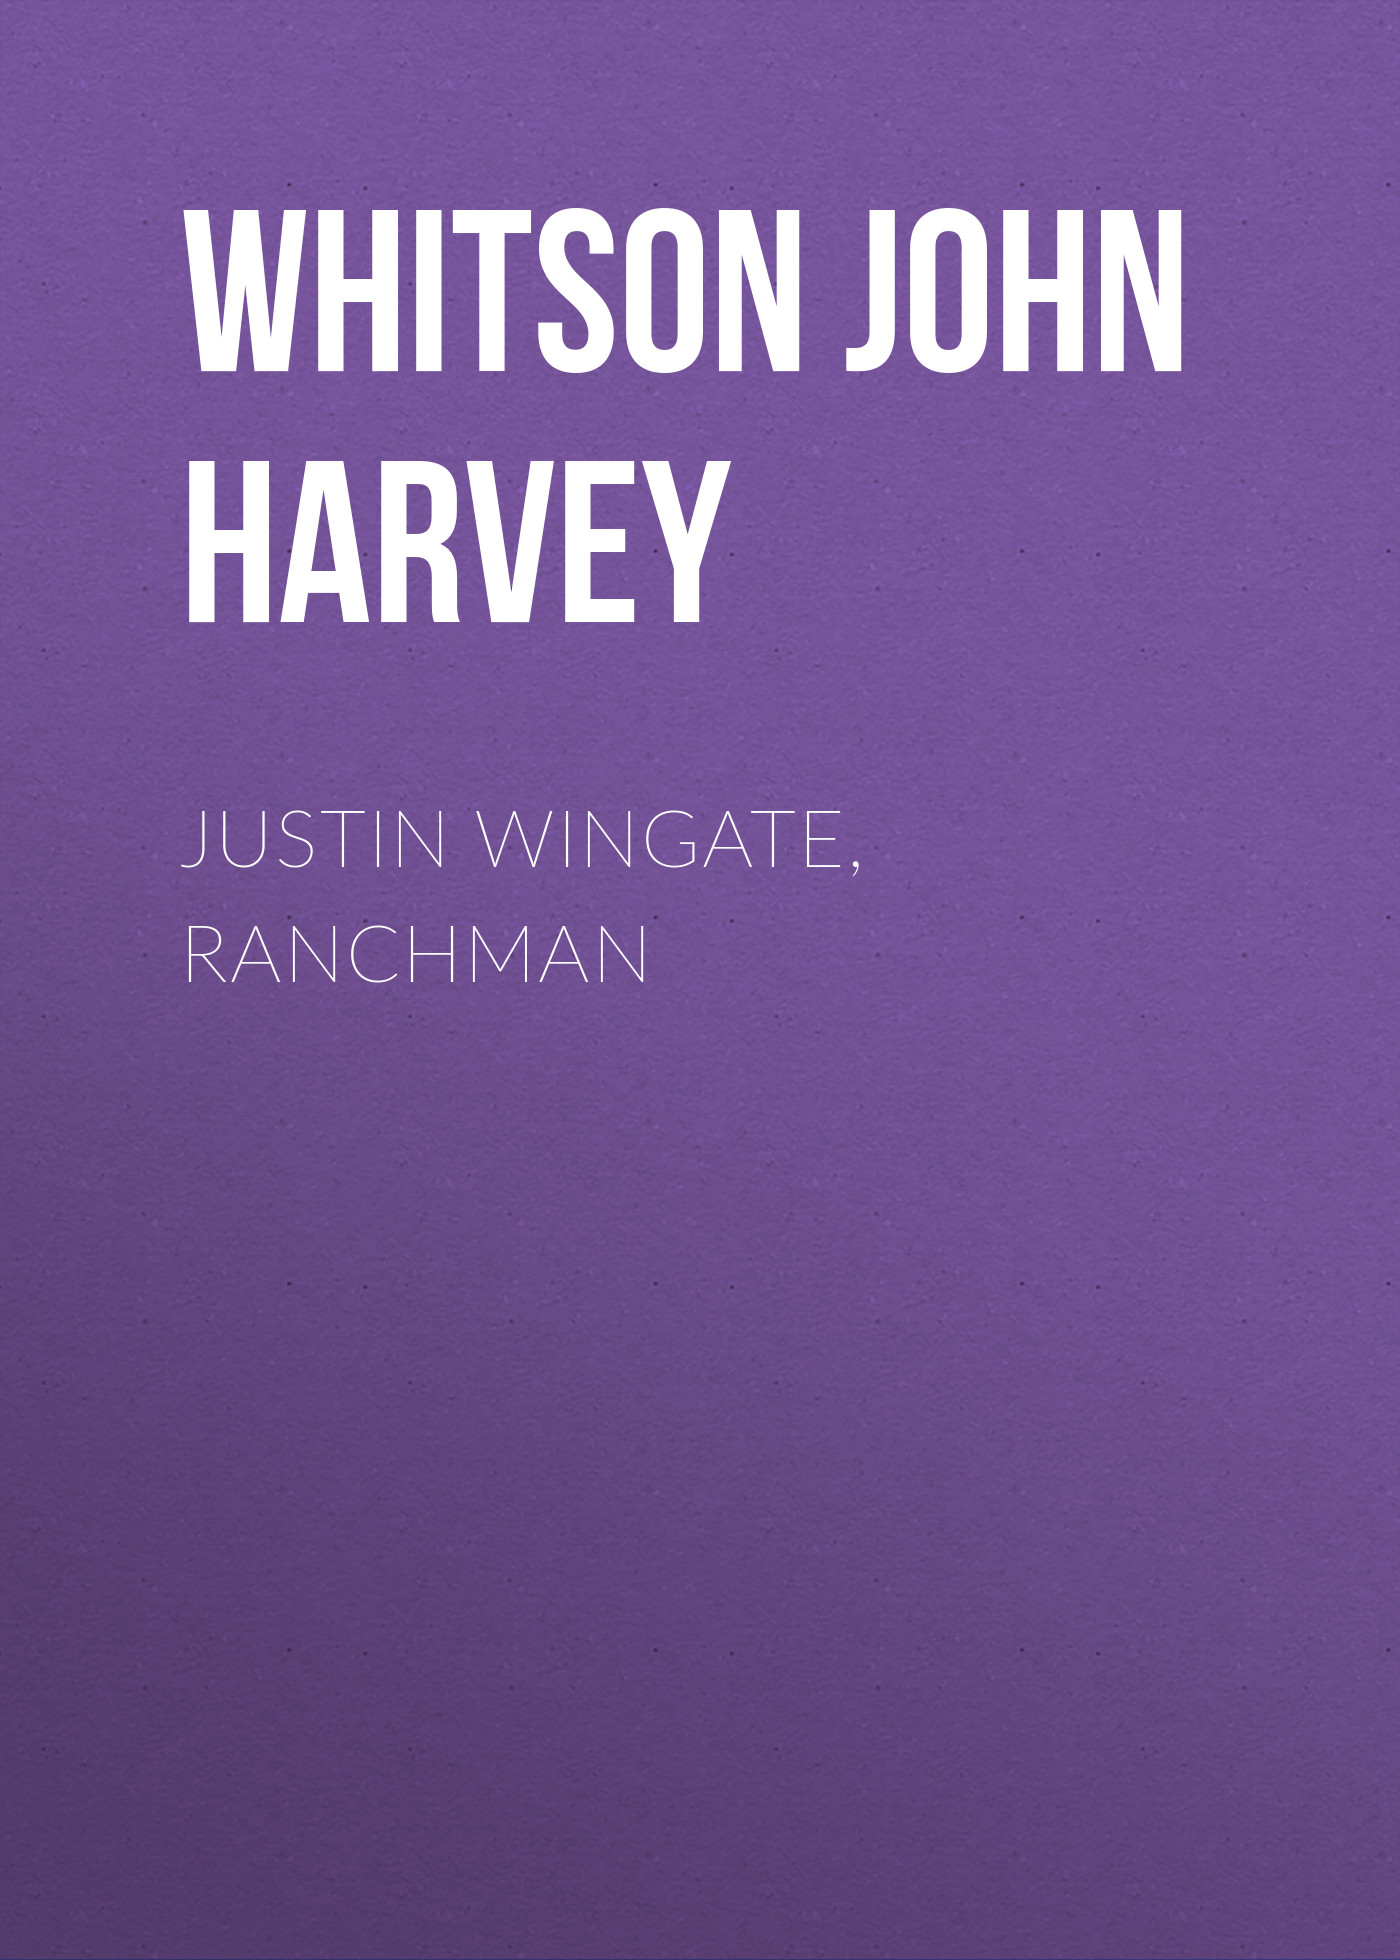 Книга Justin Wingate, Ranchman из серии , созданная John Whitson, может относится к жанру Зарубежная фантастика, Зарубежная старинная литература, Зарубежная классика. Стоимость электронной книги Justin Wingate, Ranchman с идентификатором 34336898 составляет 0 руб.